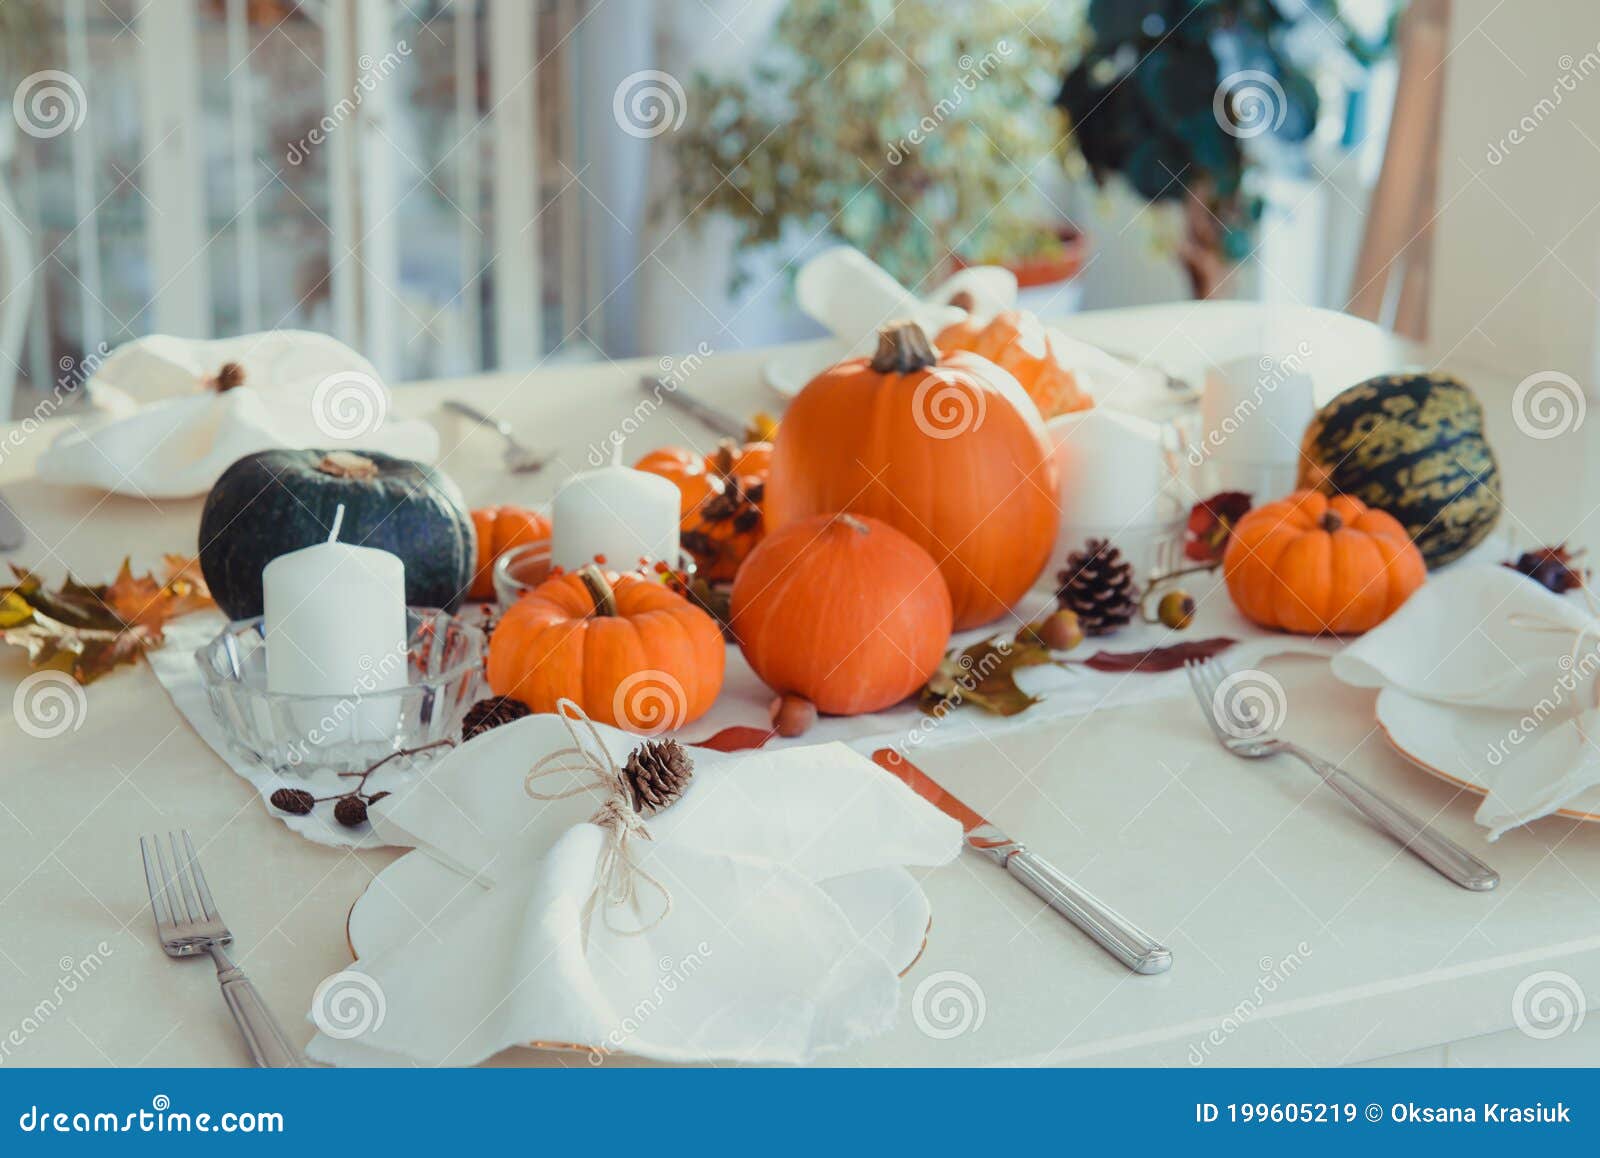 Festive Table Setting for Thanksgiving Family Home Dinner. Fall ...